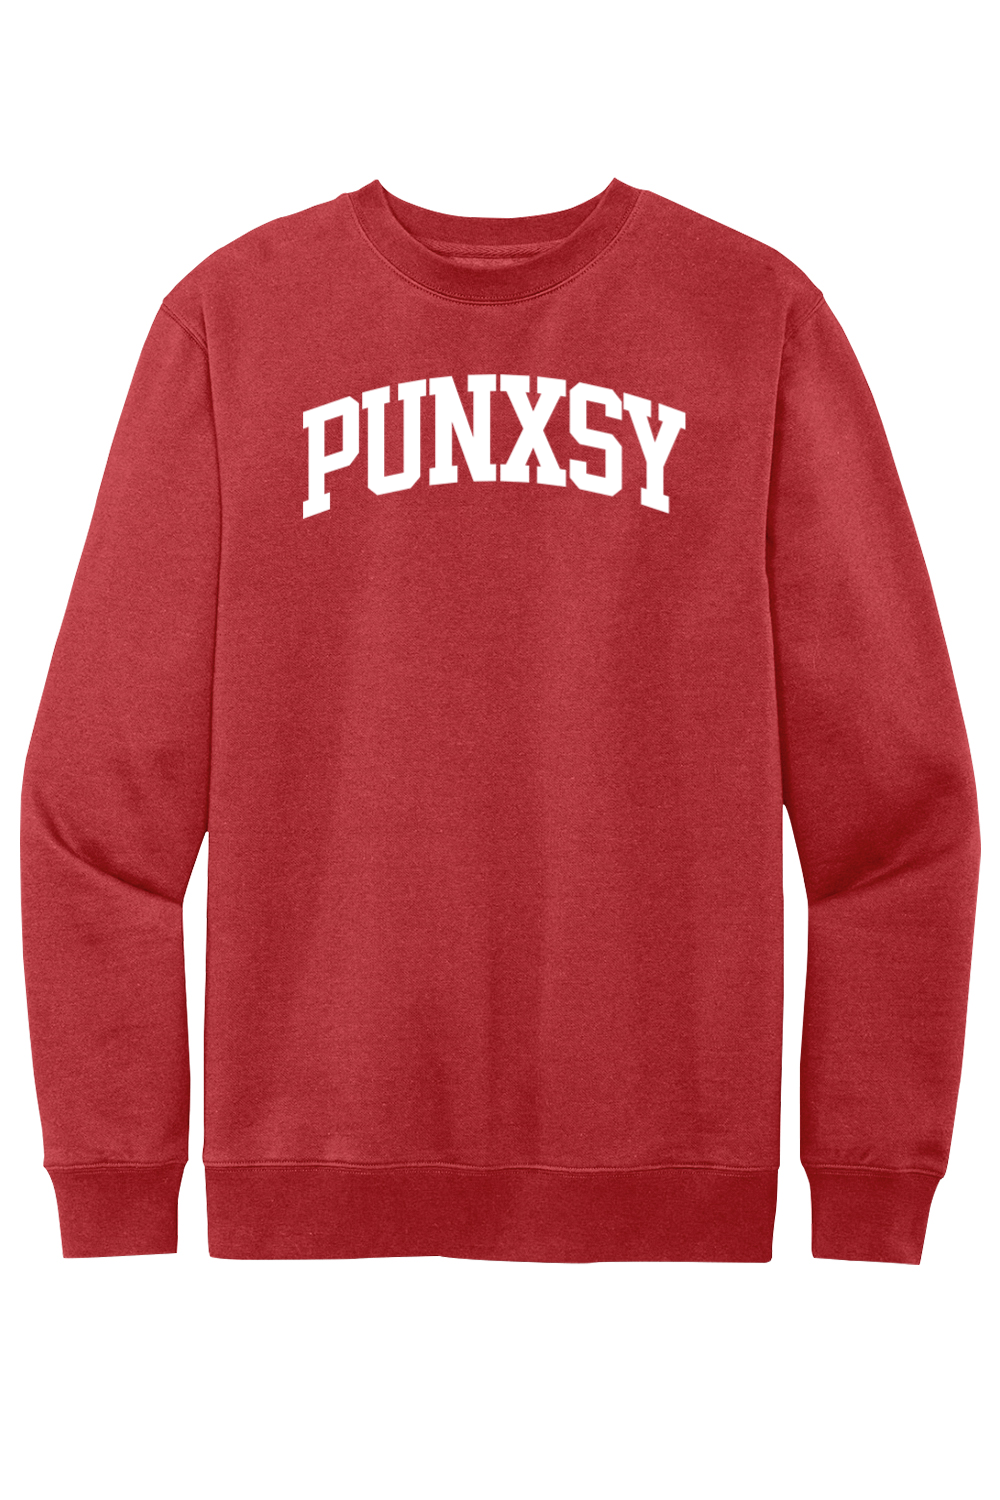 Punxsy Collegiate - Fleece Crewneck Sweatshirt - Yinzylvania